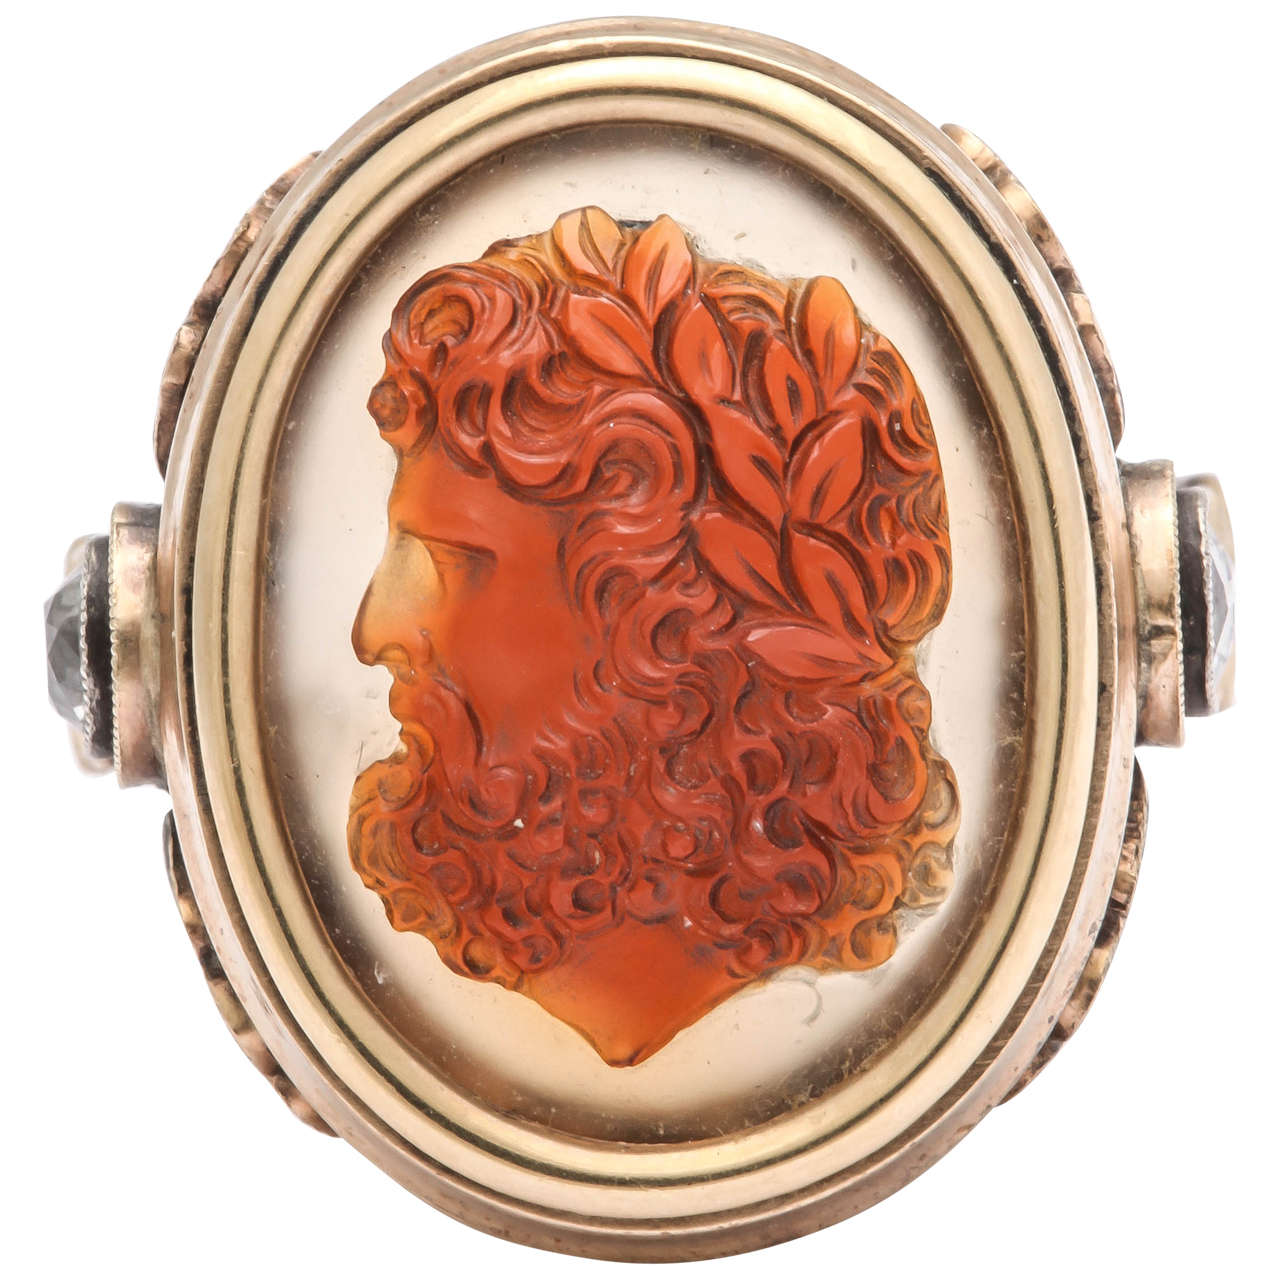 Ein auffälliger ovaler Ring aus 14 Karat Gelbgold, besetzt mit einer fein geschnitzten Achatkamee, die den Donnergott Zeus darstellt, dessen Kopf von polierten Lorbeerblättern umrankt ist. Auf jeder Schulter und der Oberseite des Schafts sind drei